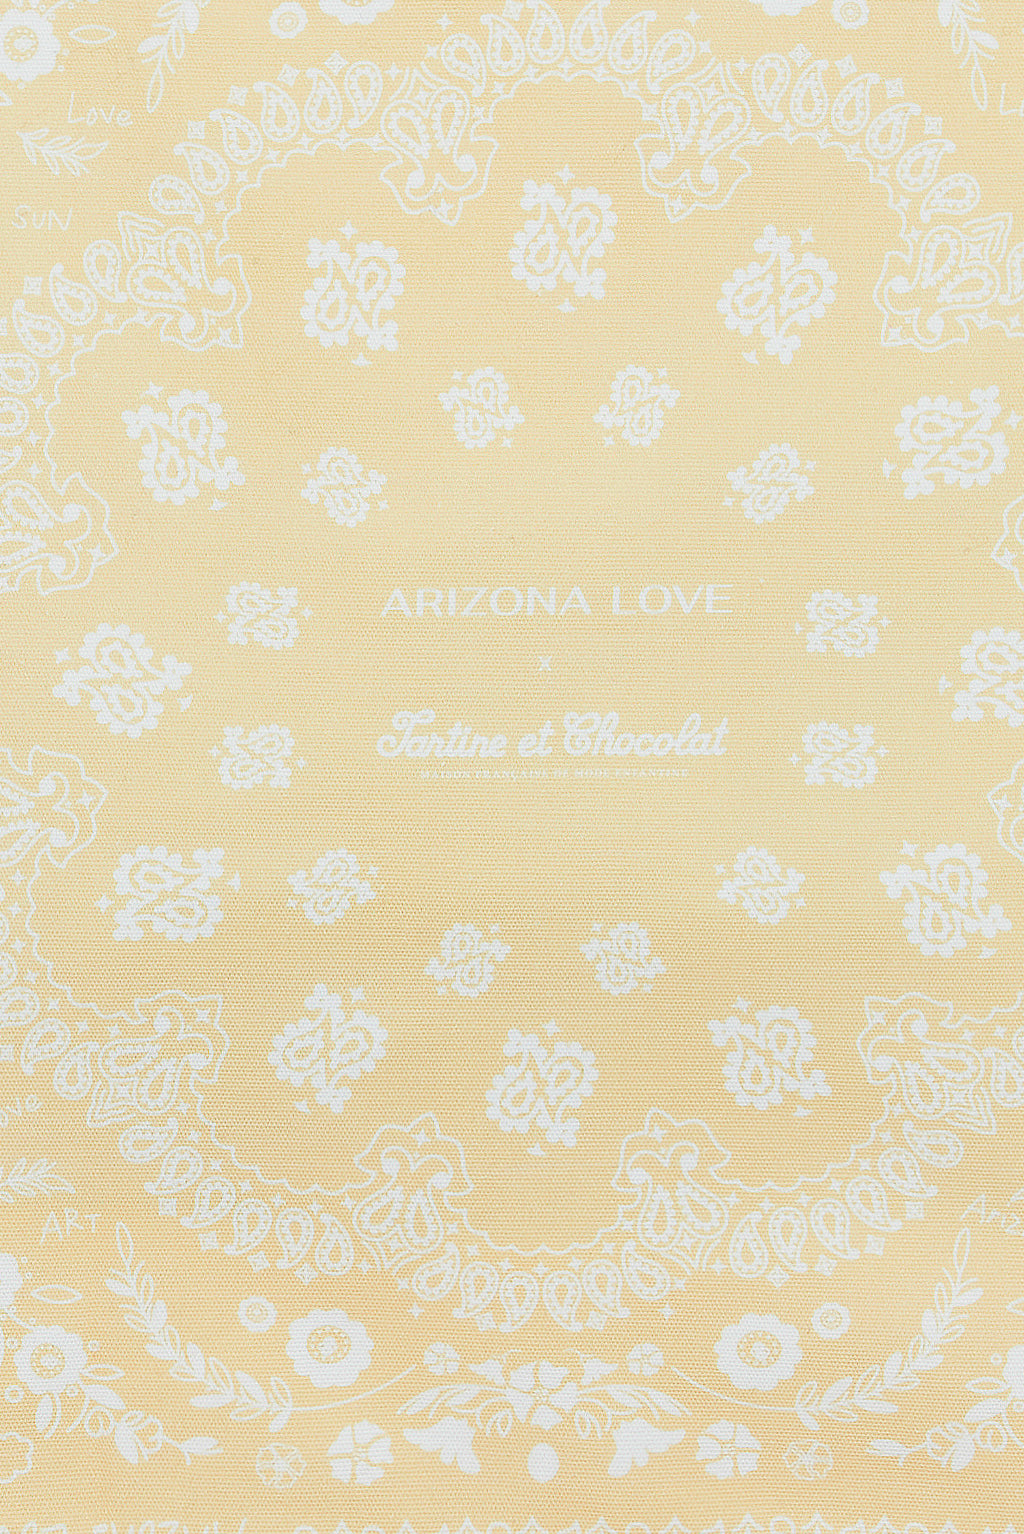 Tote bag Yellow - Arizona Love X Tartine et Chocolat